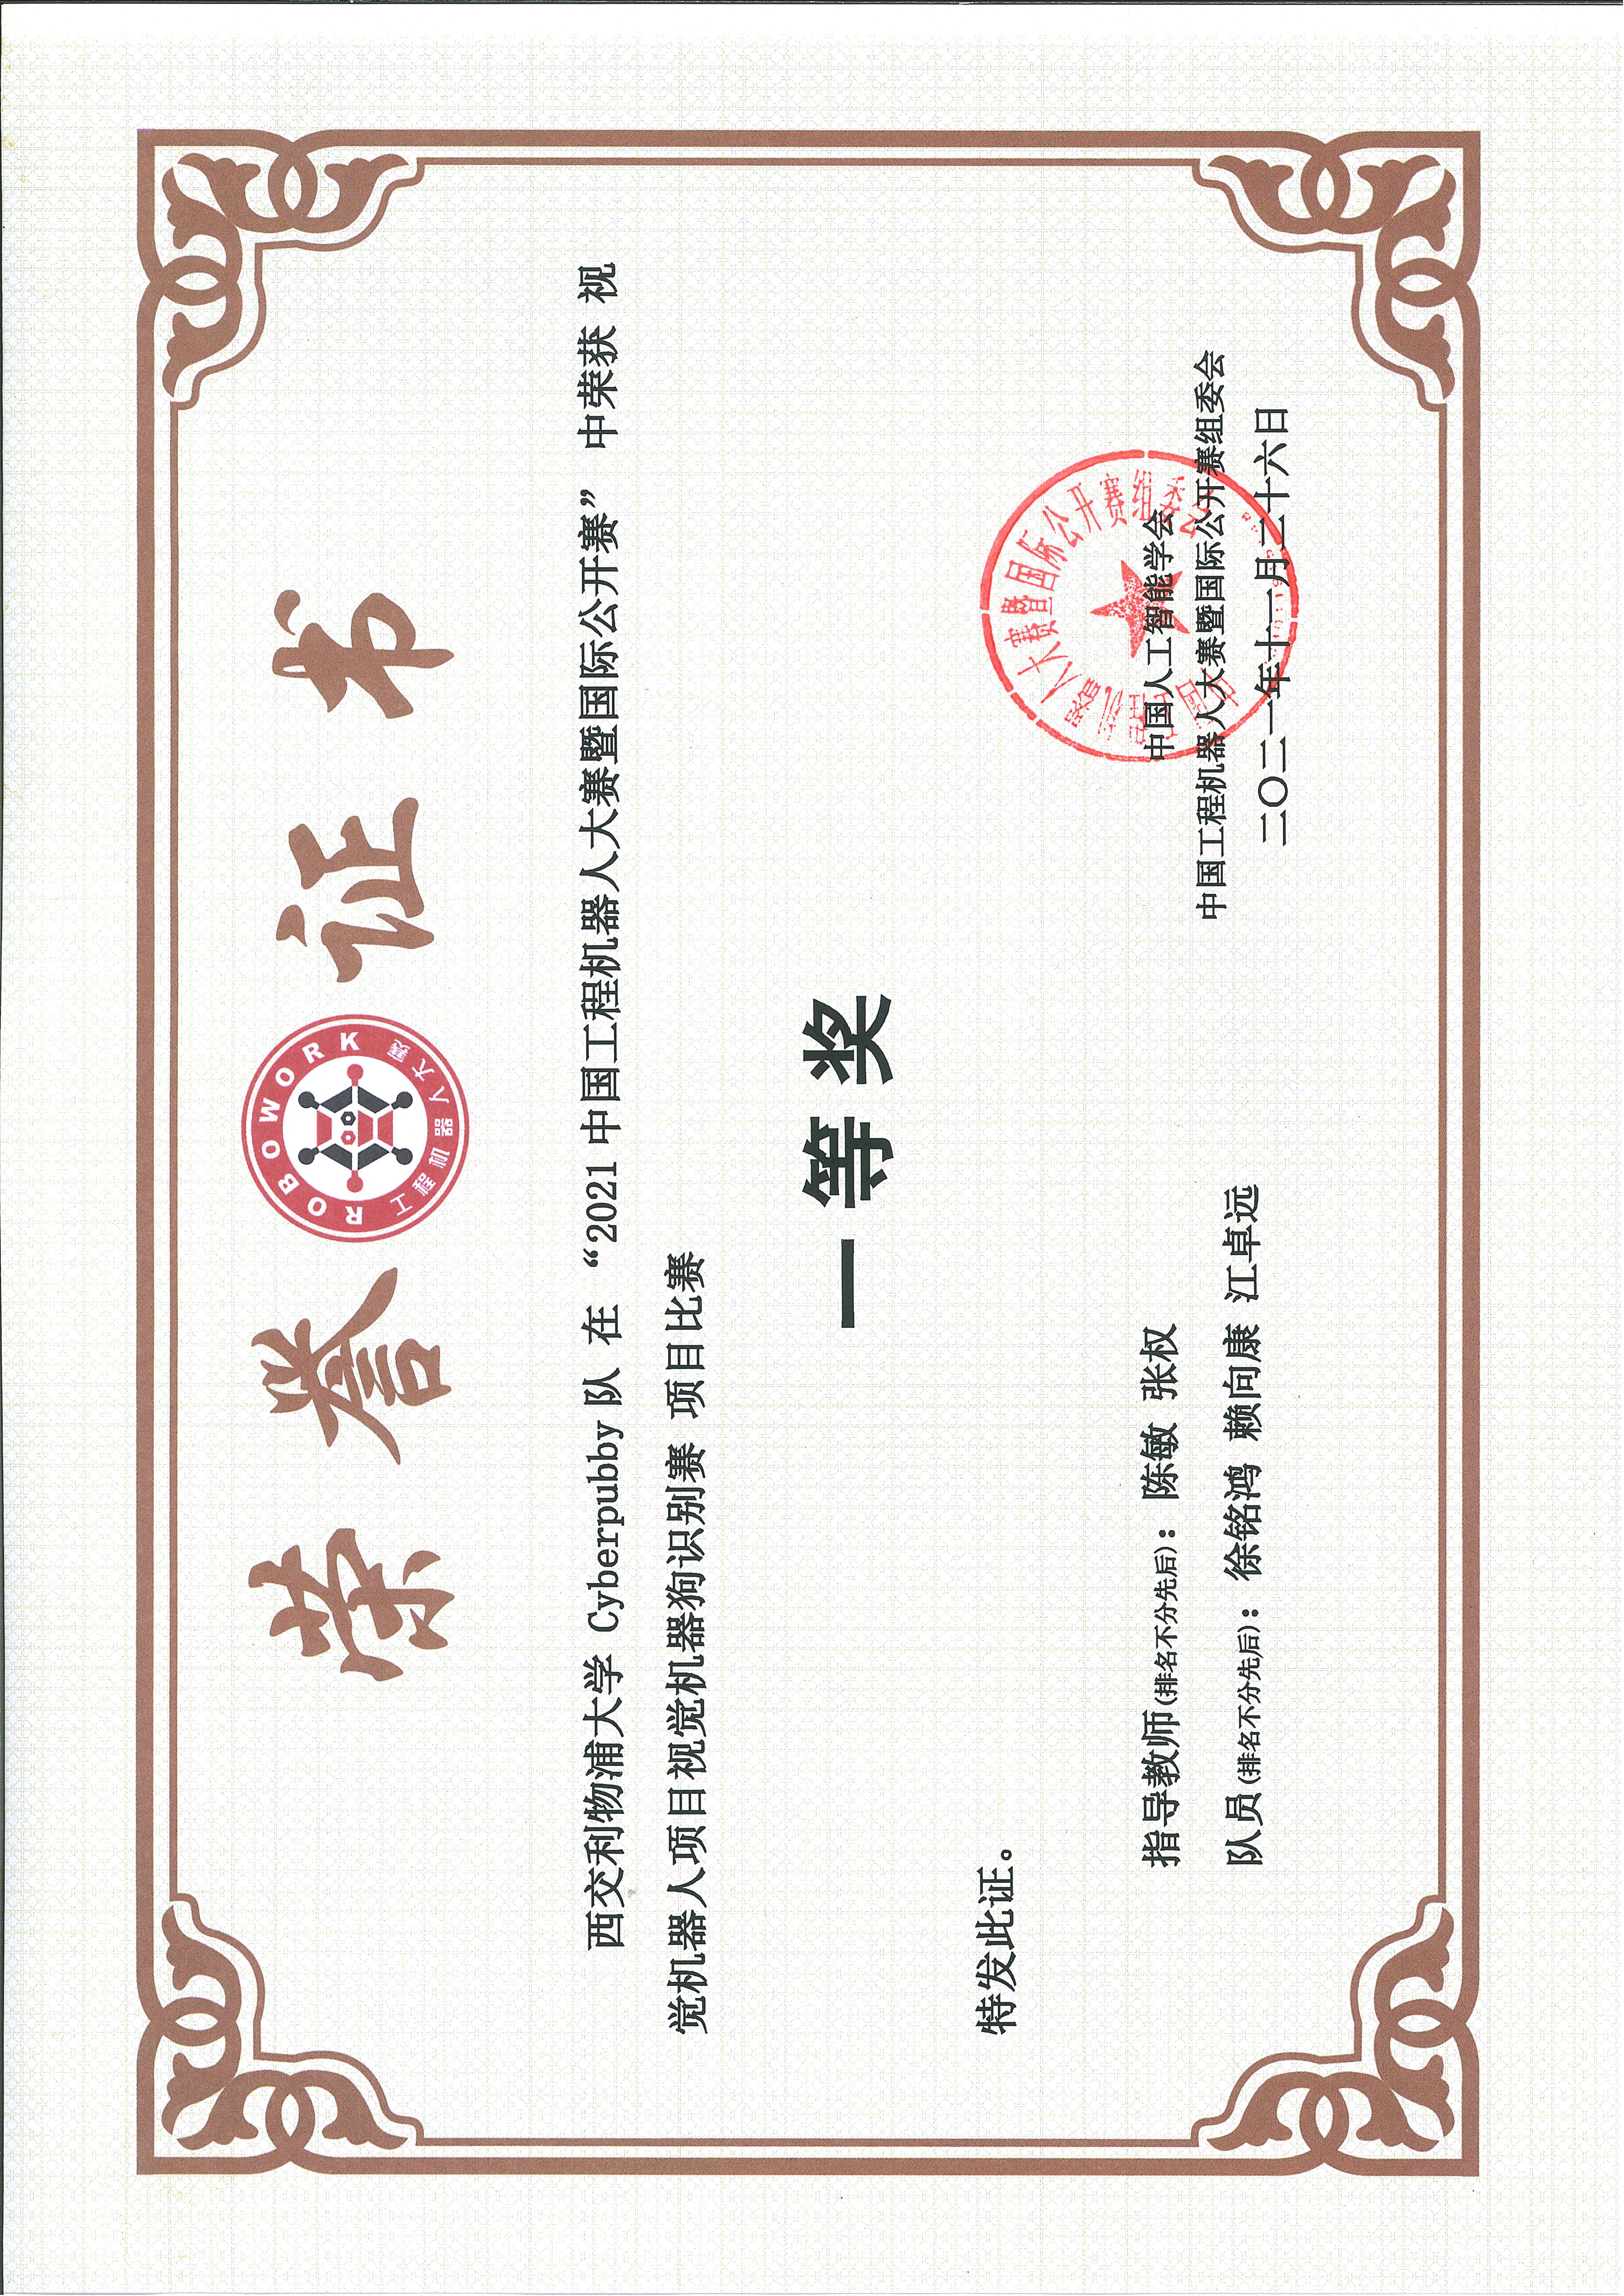 Certificate of RoboWork 2021